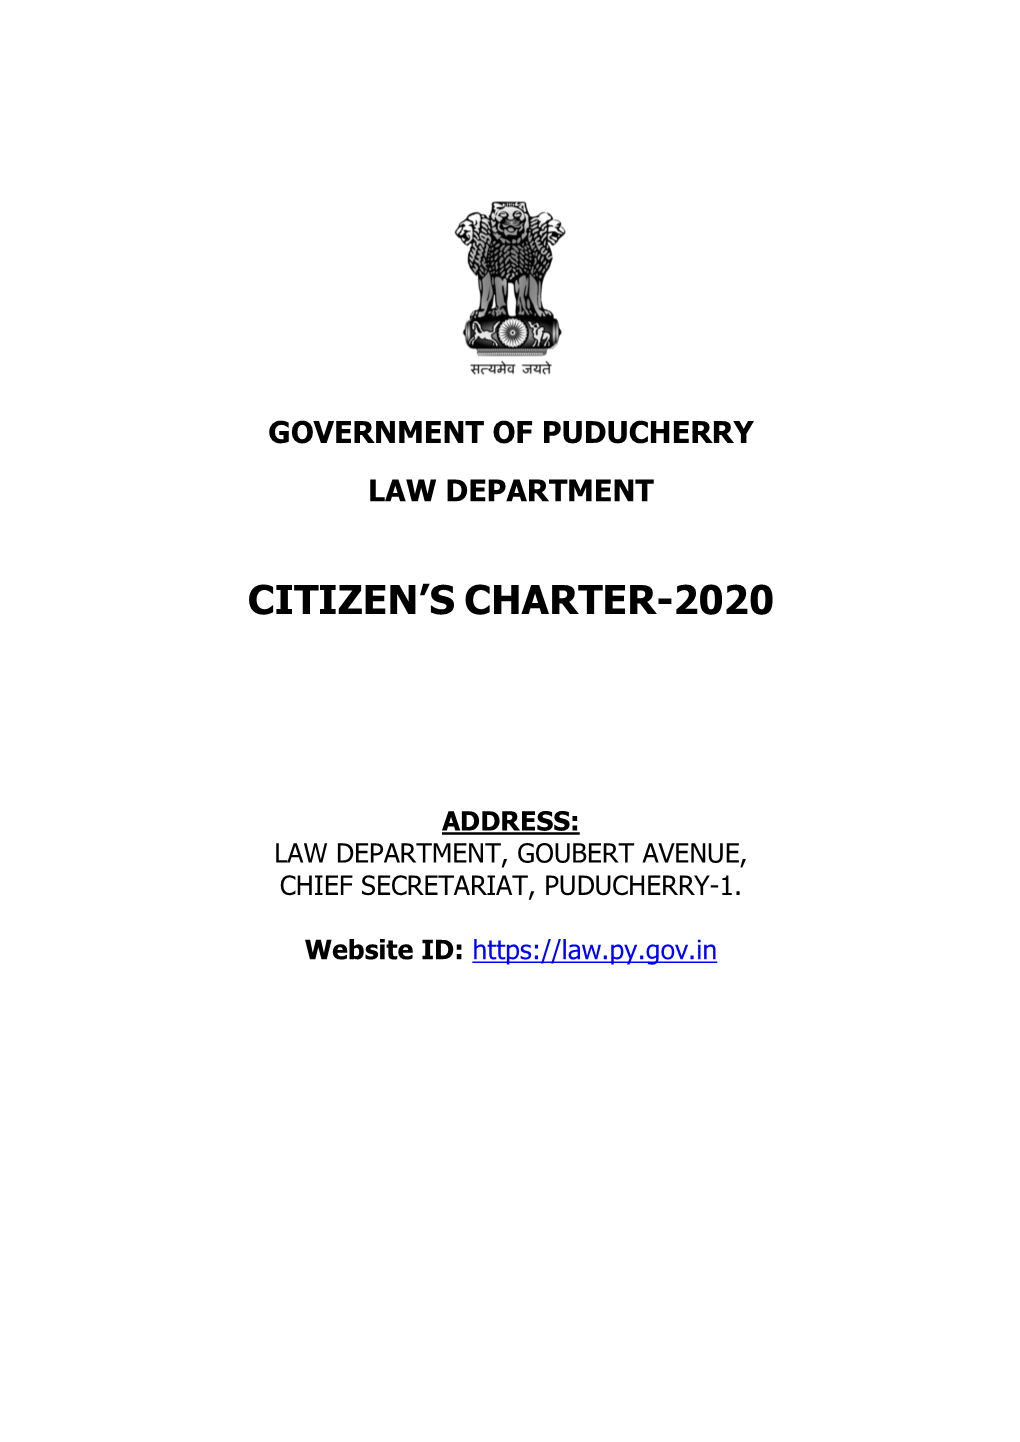 Citizen's Charter-2020